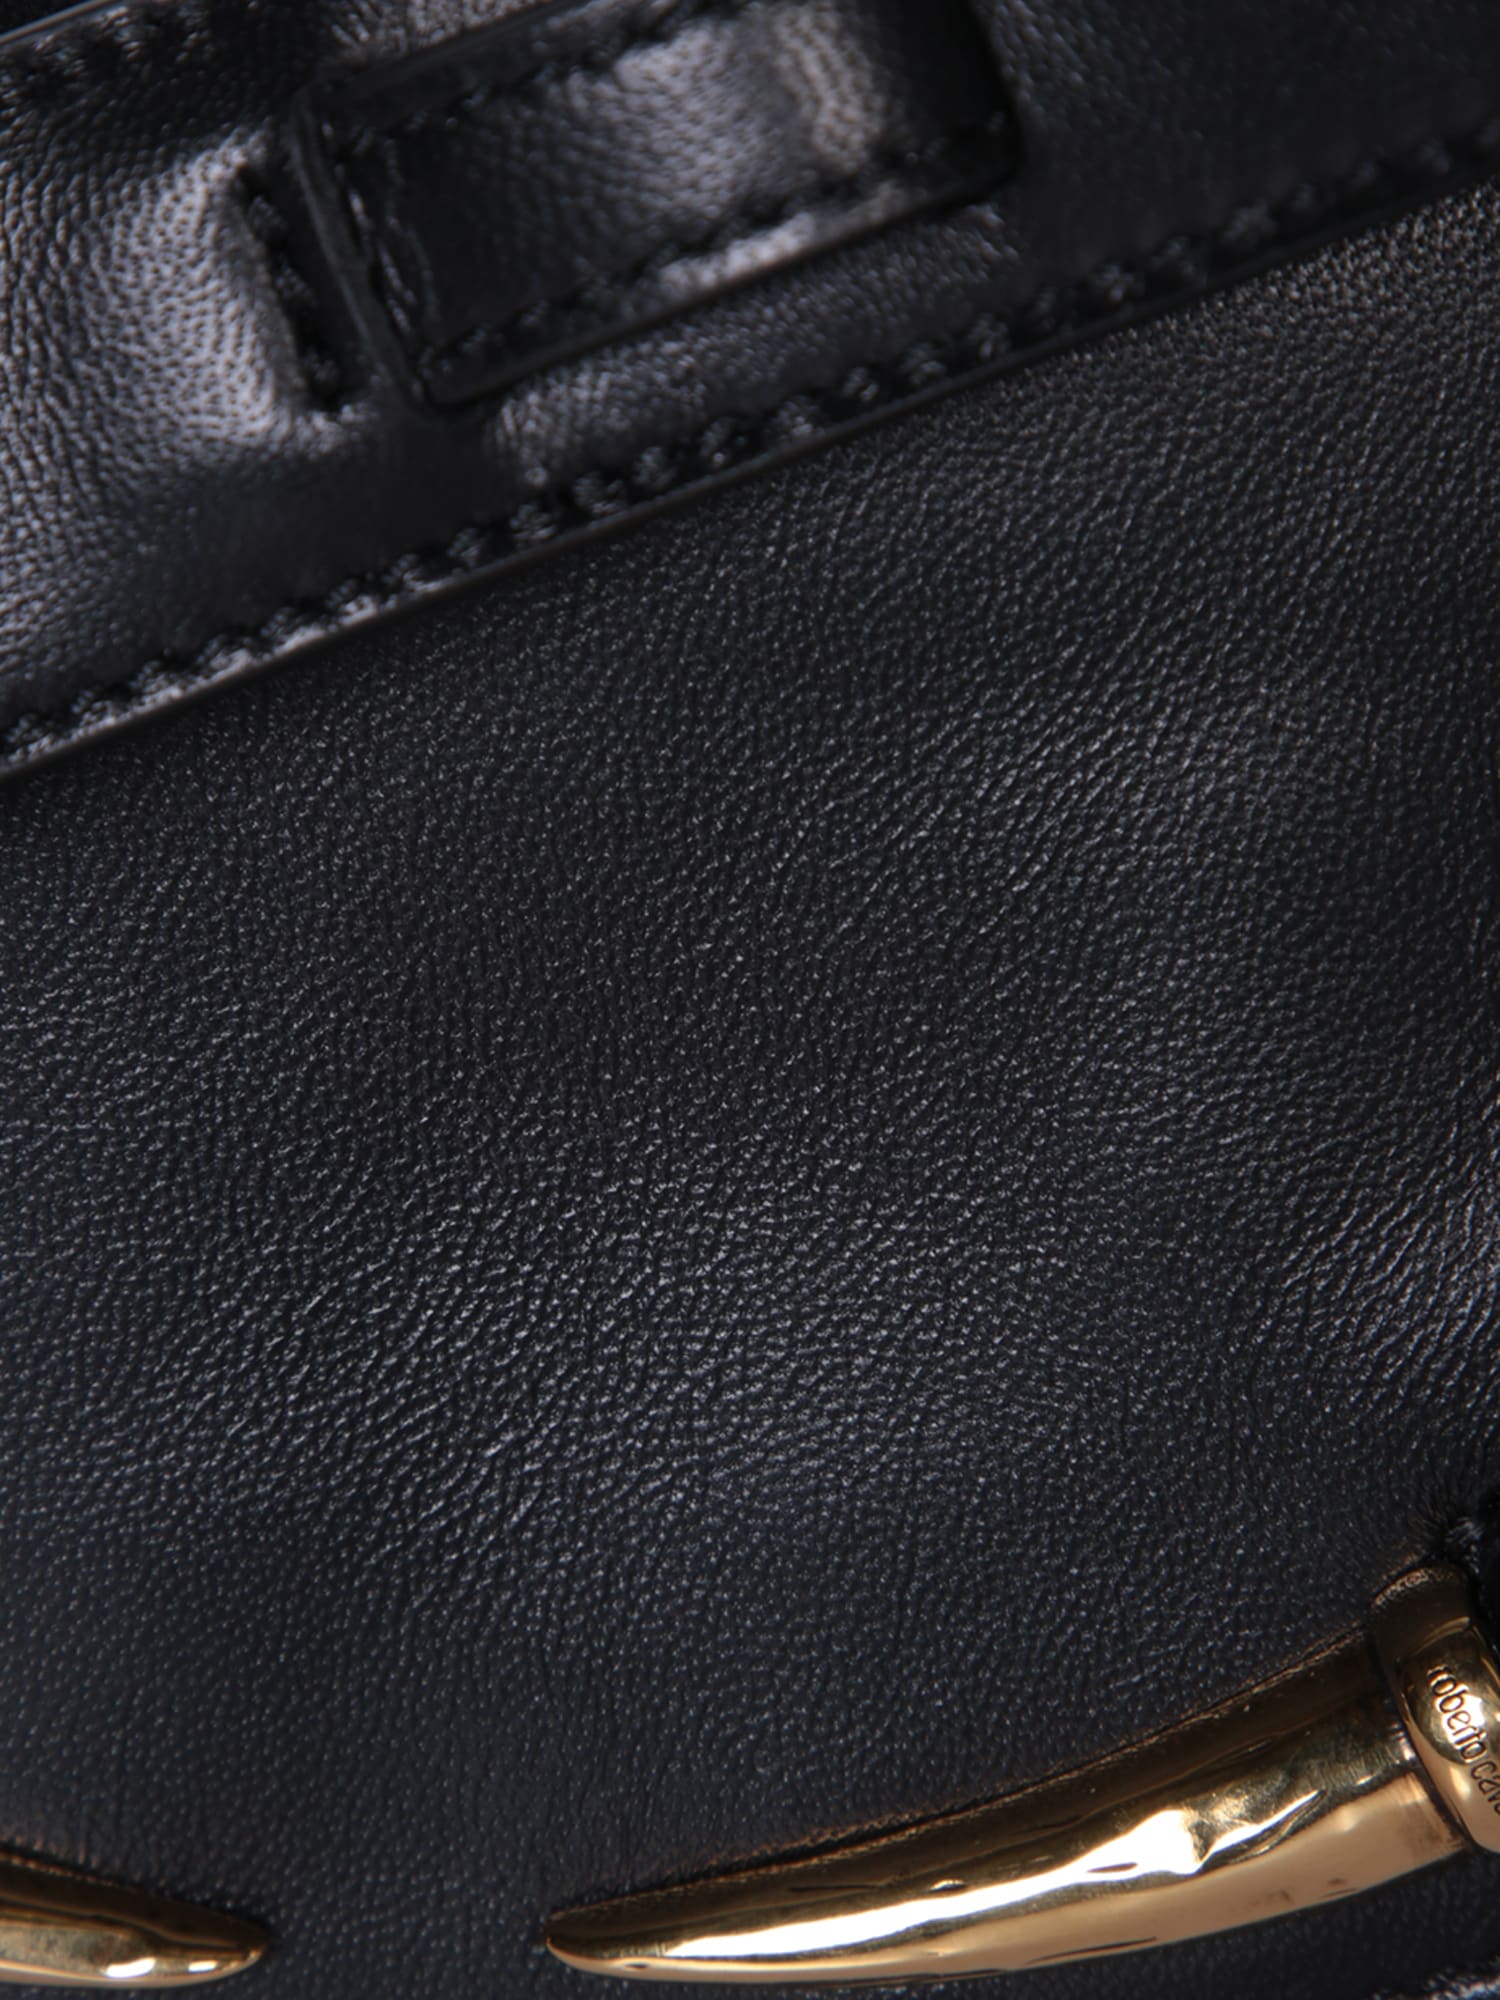 Shop Roberto Cavalli Black Leather Shoulder Bag